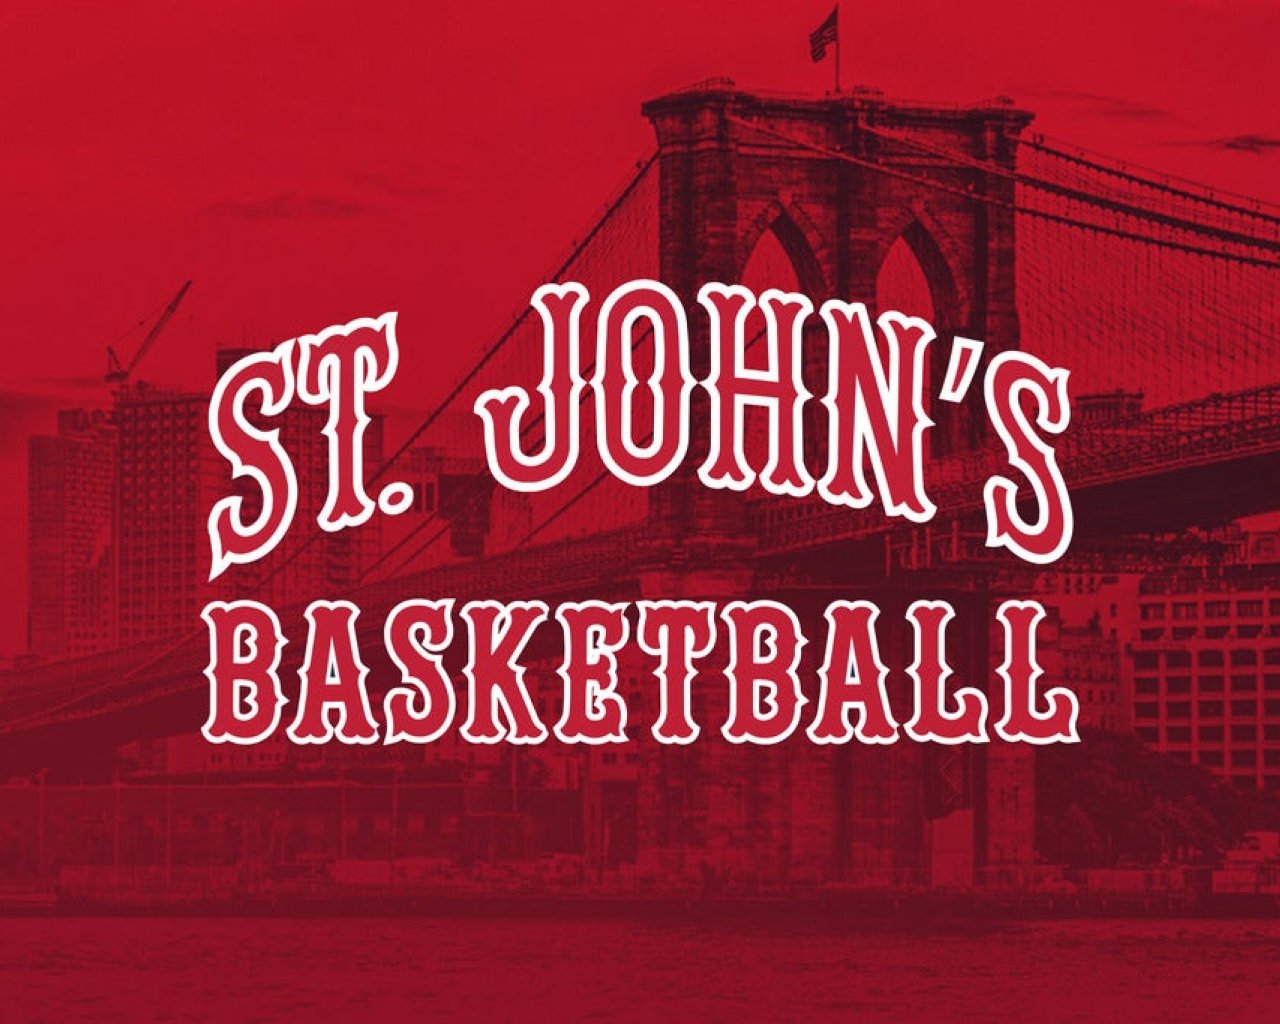 St. John's Red Storm Men's Basketball